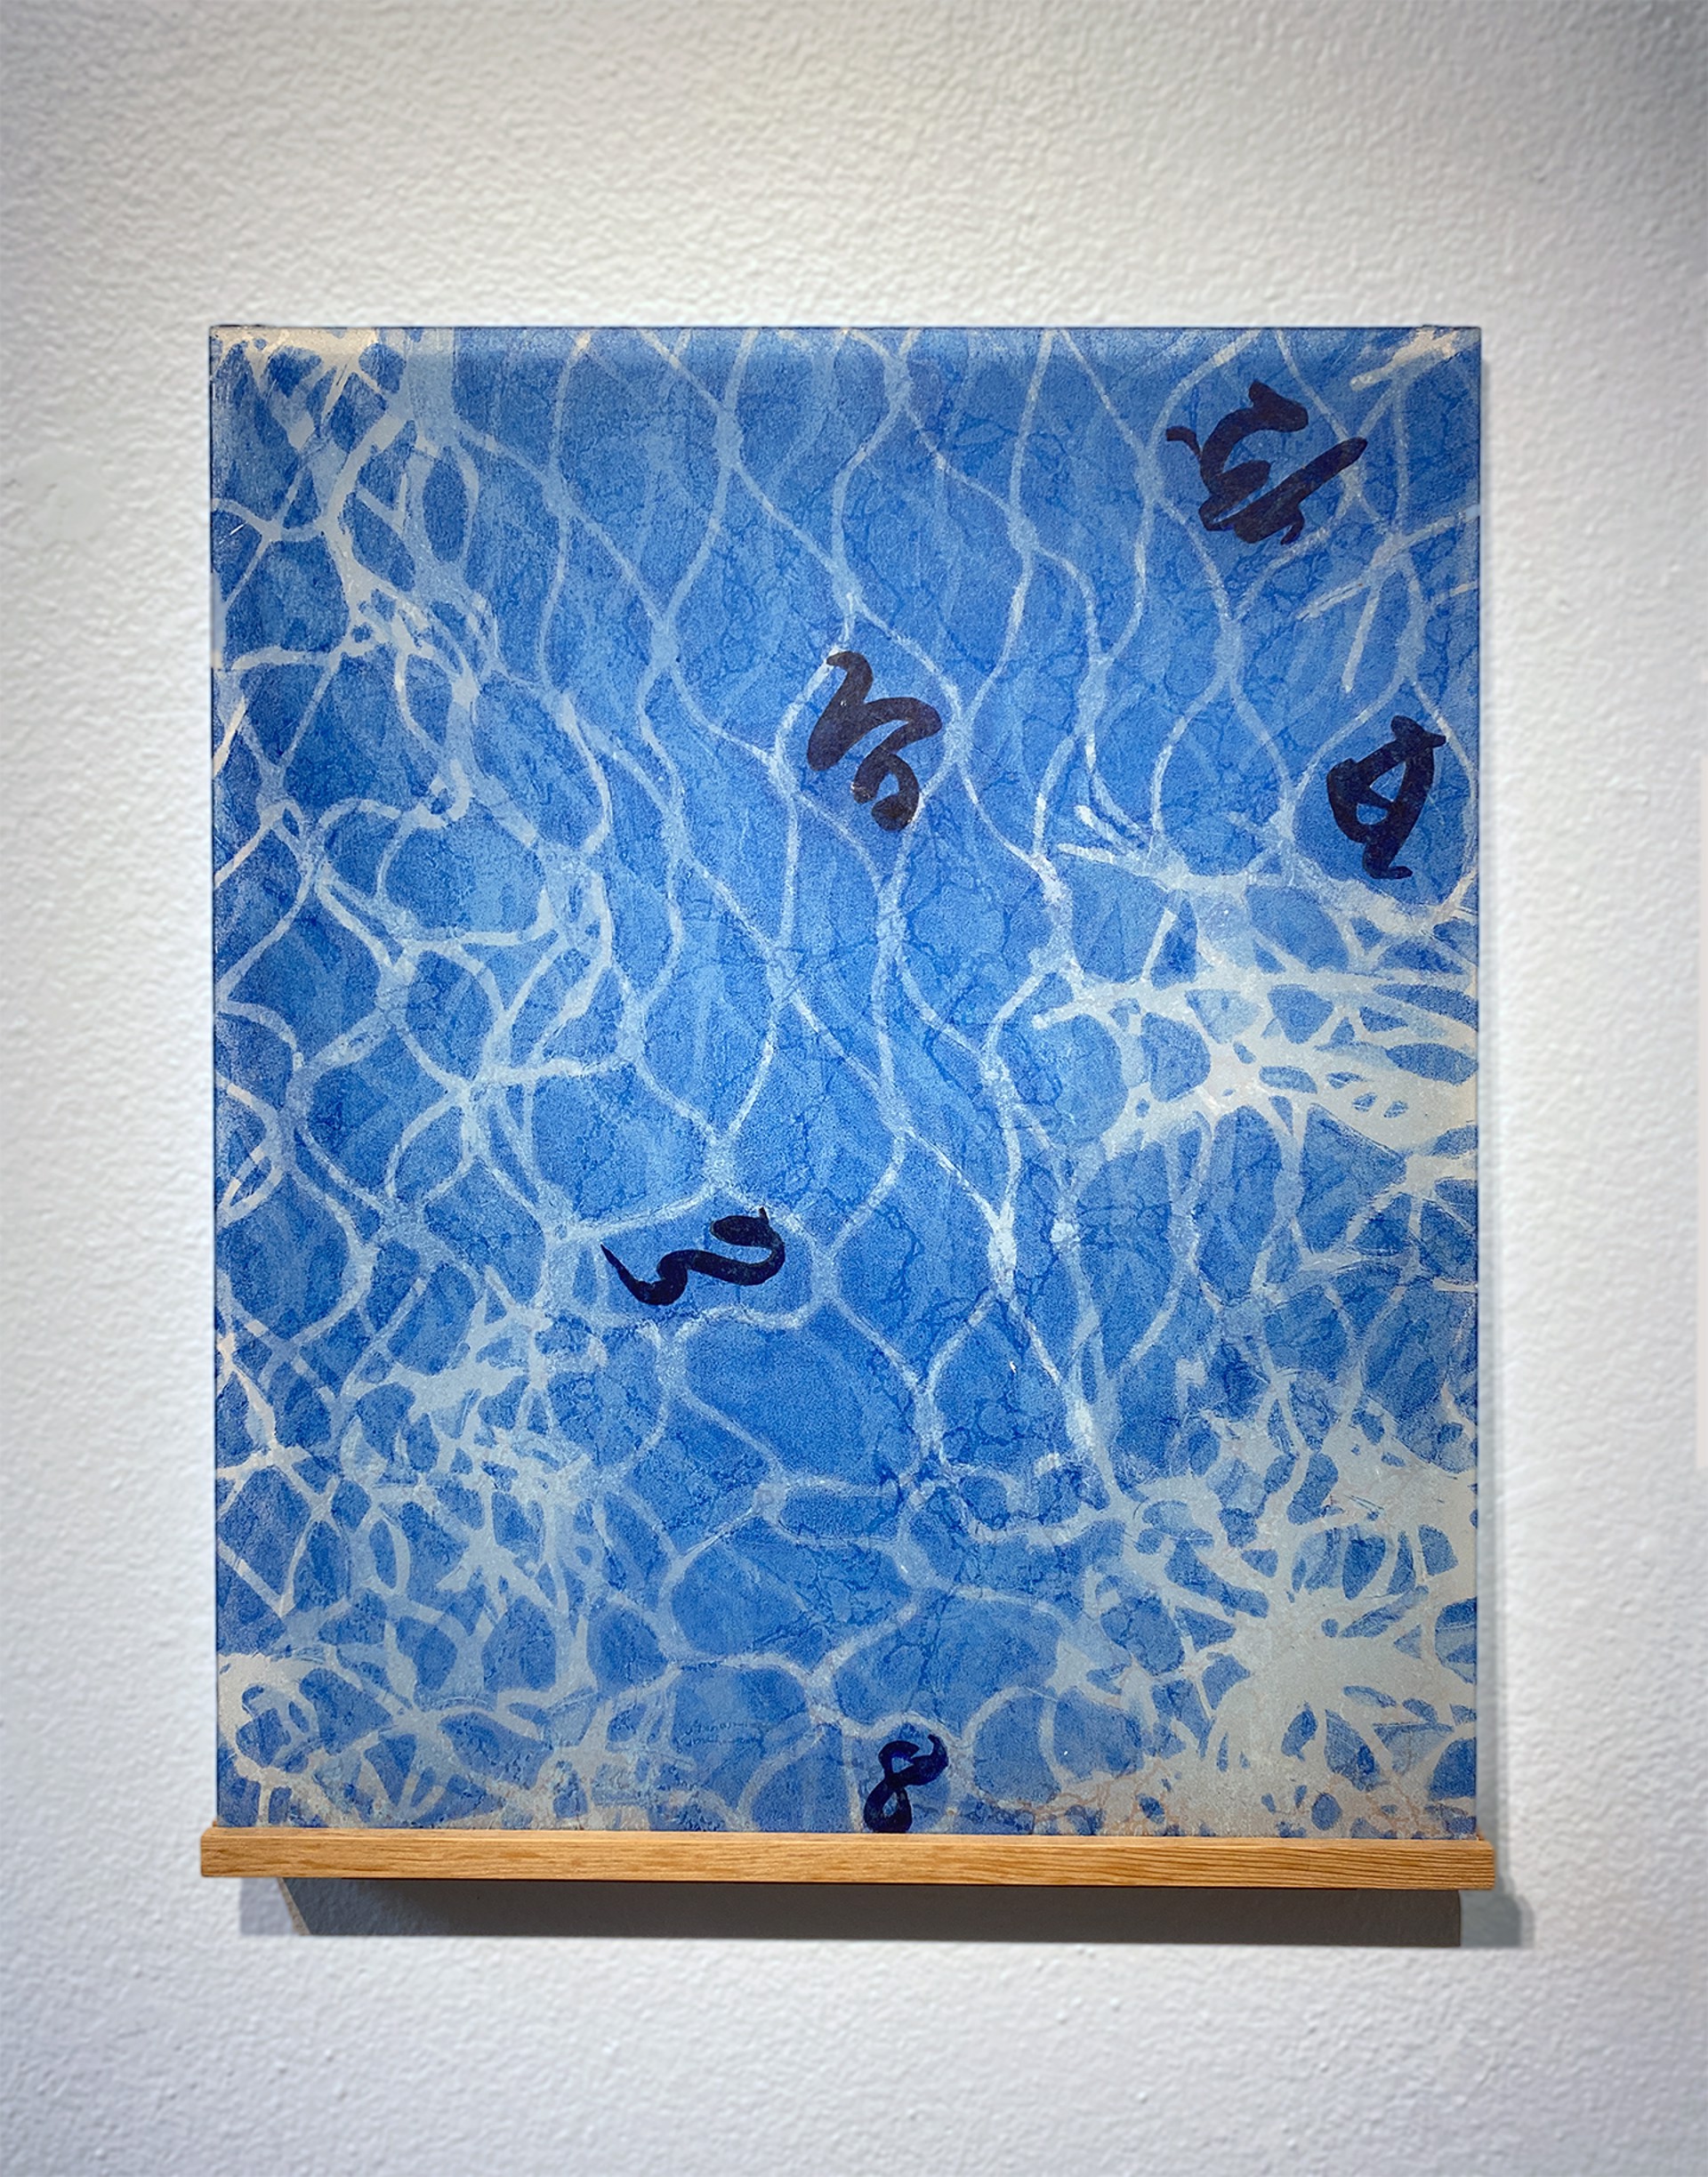 Waltz in Blue by Joan Wortis